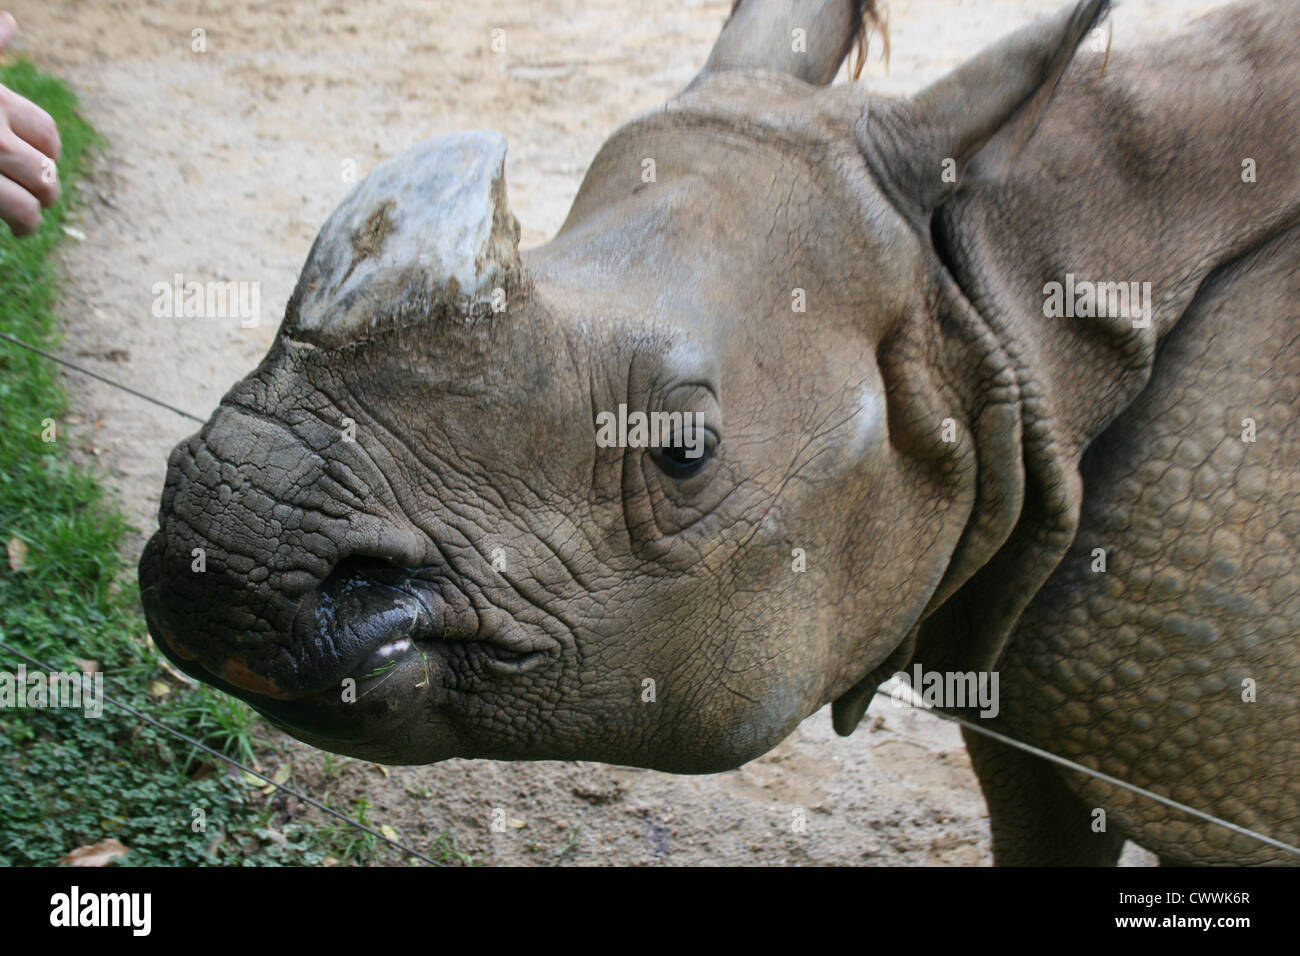 Nashorn Rhinosaurus süße wilde Tier Zootiere von Zoo safari Stockfoto